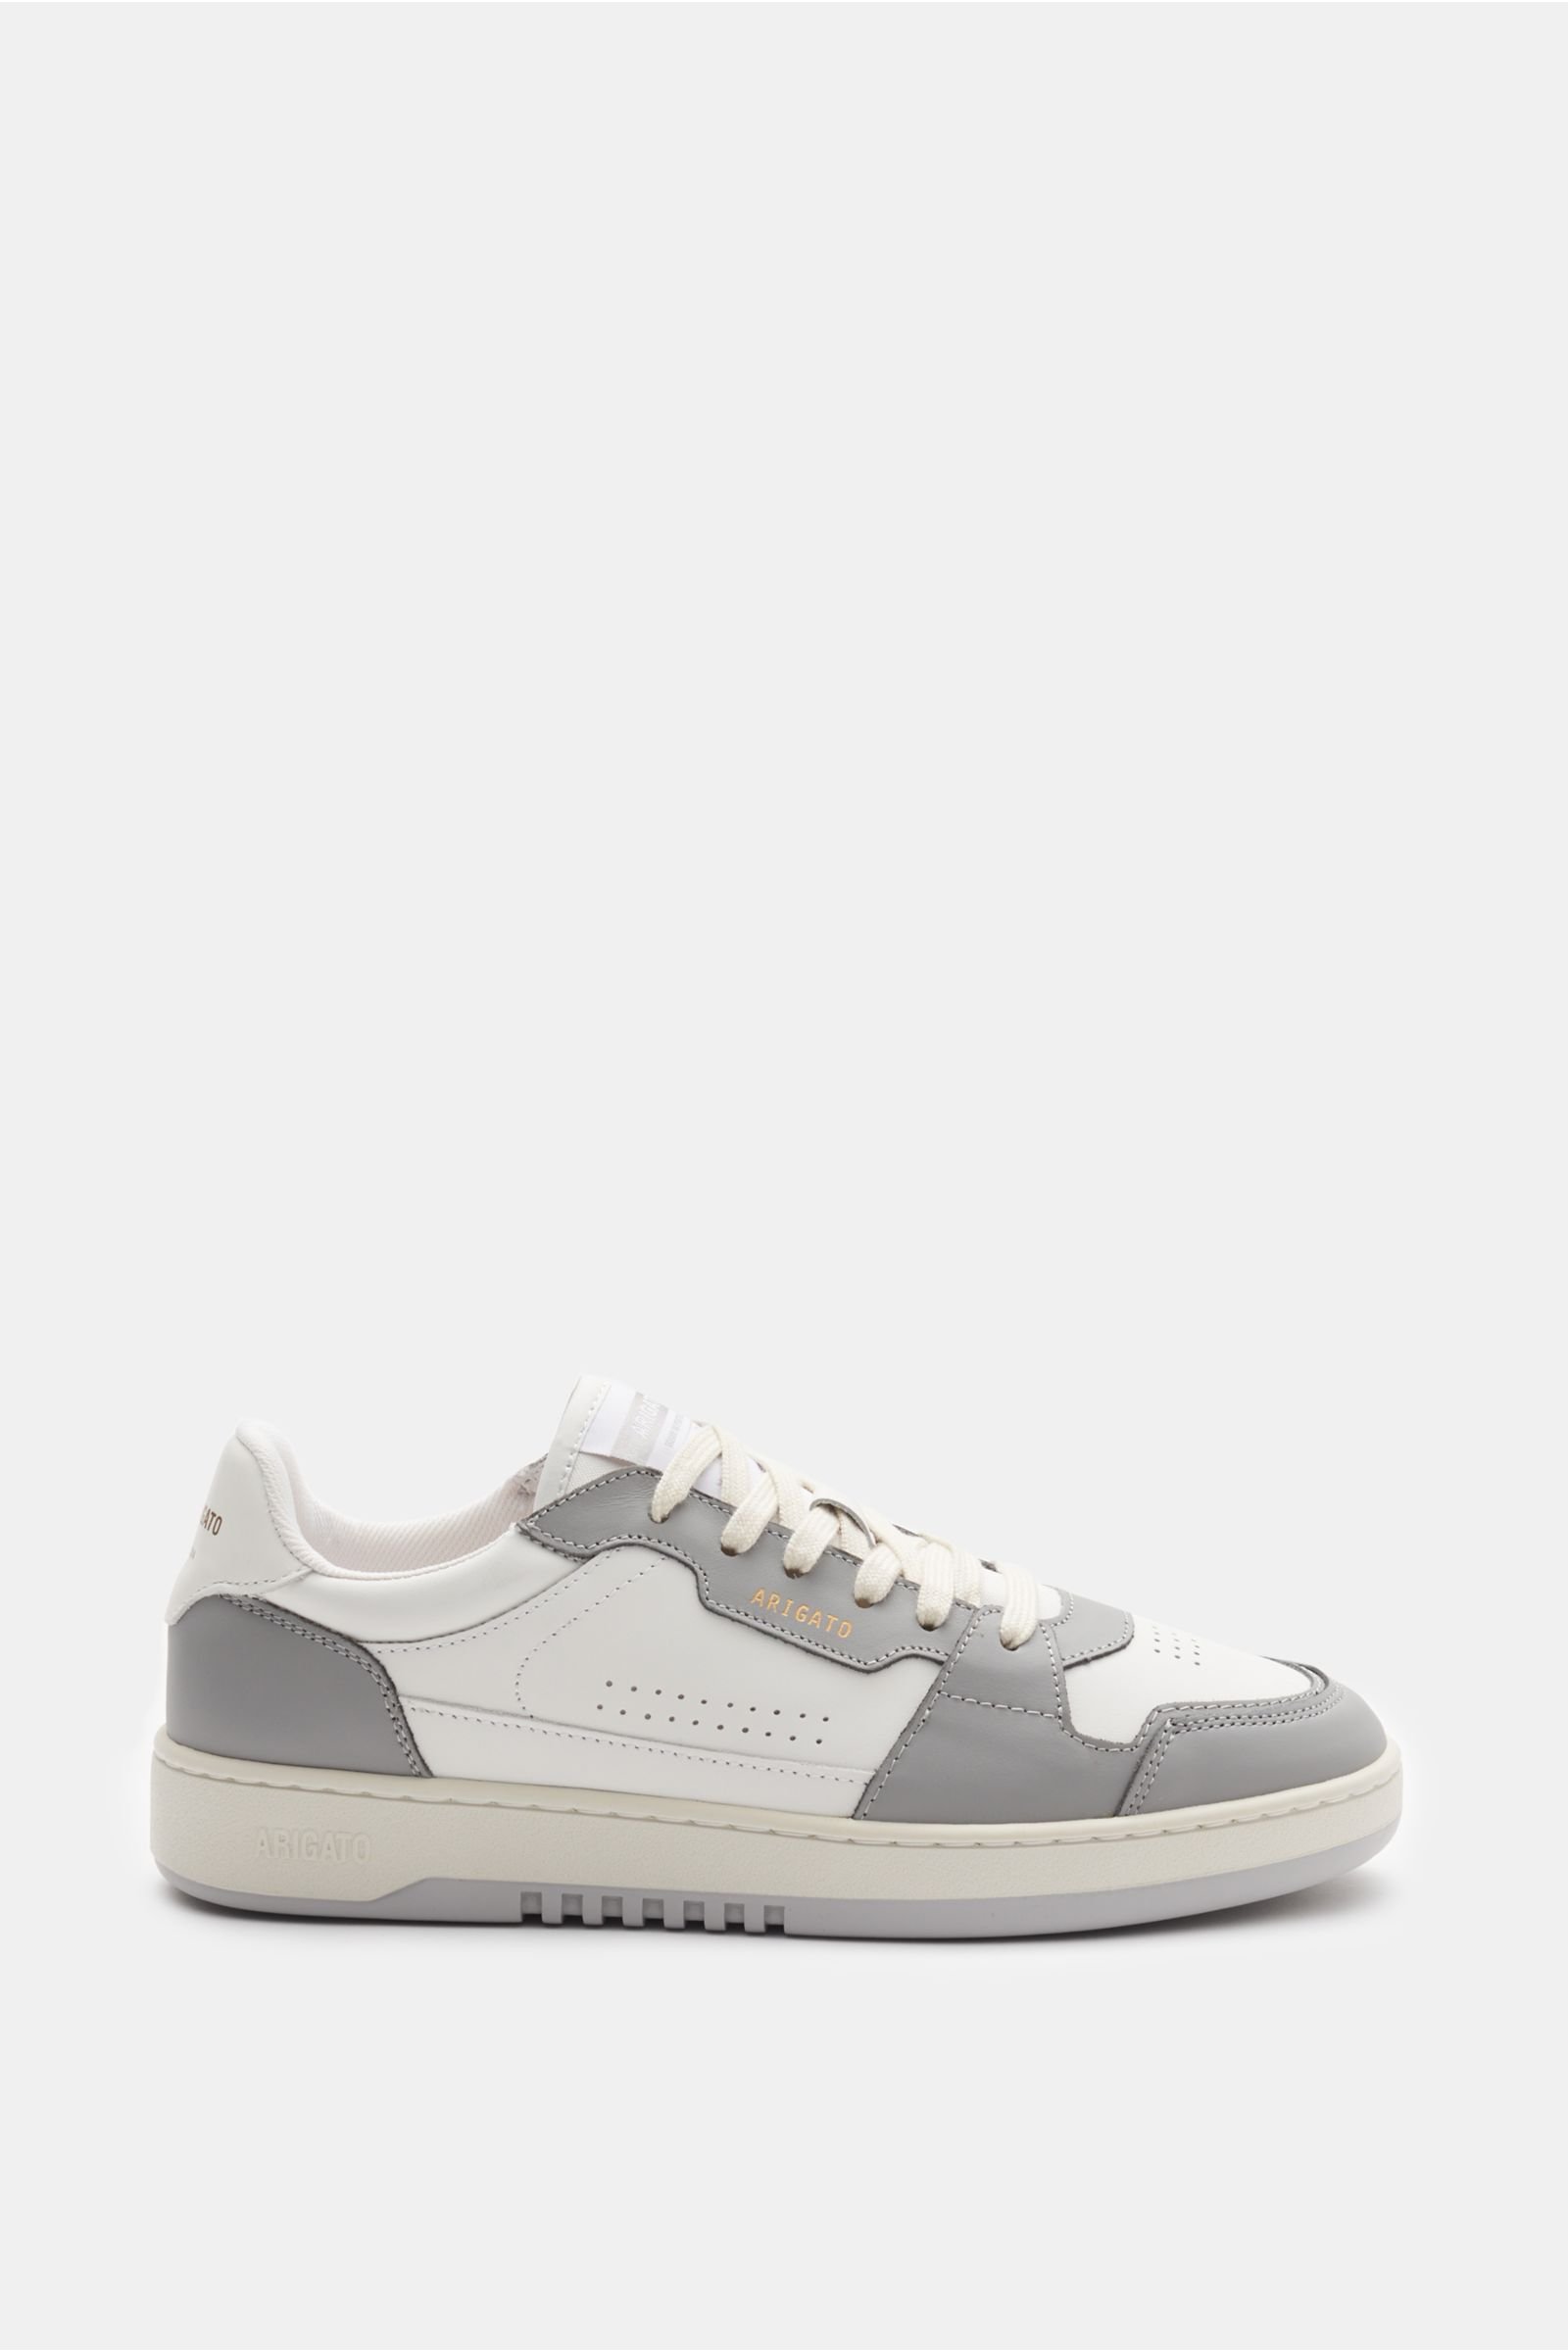 Sneaker 'Dice Lo' grau/weiß